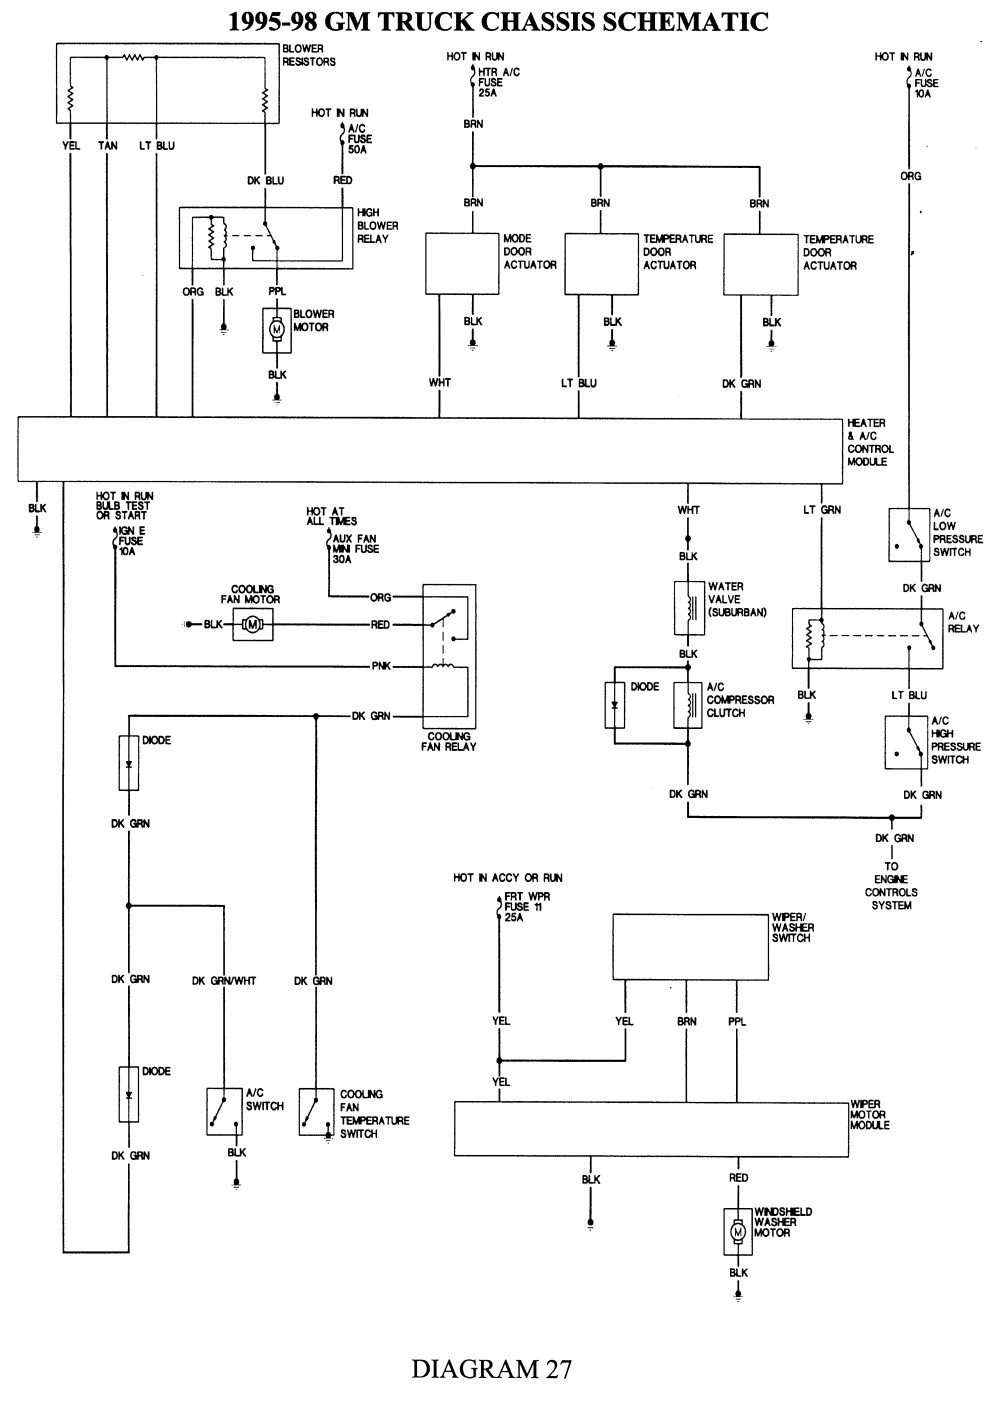 Repair Guides Wiring Diagrams Wiring Diagrams Autozone C1500 Wiring Diagram 5 C1500 Wiring Diagram